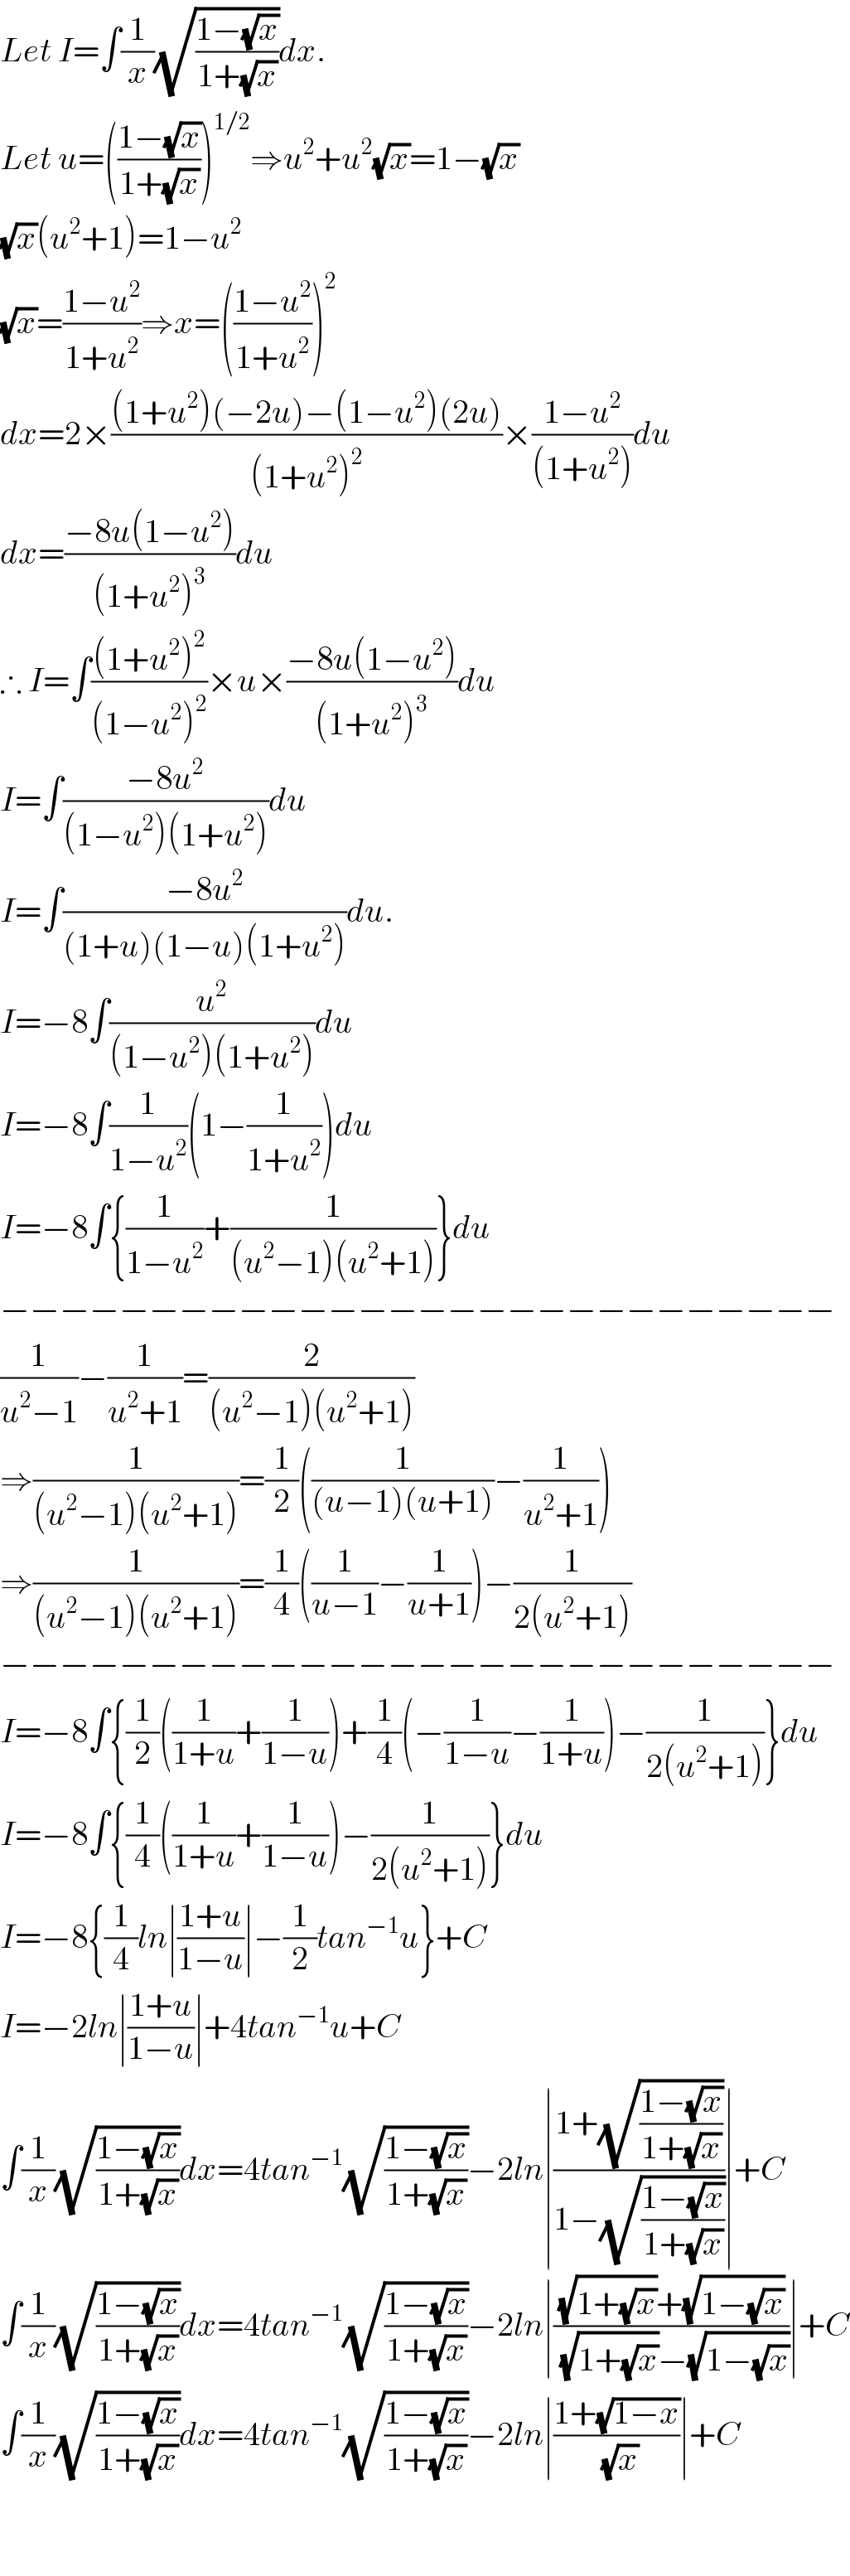 Let I=∫(1/x)(√((1−(√x))/(1+(√x))))dx.  Let u=(((1−(√x))/(1+(√x))))^(1/2) ⇒u^2 +u^2 (√x)=1−(√x)  (√x)(u^2 +1)=1−u^2   (√x)=((1−u^2 )/(1+u^2 ))⇒x=(((1−u^2 )/(1+u^2 )))^2   dx=2×(((1+u^2 )(−2u)−(1−u^2 )(2u))/((1+u^2 )^2 ))×((1−u^2 )/((1+u^2 )))du  dx=((−8u(1−u^2 ))/((1+u^2 )^3 ))du  ∴ I=∫(((1+u^2 )^2 )/((1−u^2 )^2 ))×u×((−8u(1−u^2 ))/((1+u^2 )^3 ))du  I=∫((−8u^2 )/((1−u^2 )(1+u^2 )))du  I=∫((−8u^2 )/((1+u)(1−u)(1+u^2 )))du.  I=−8∫(u^2 /((1−u^2 )(1+u^2 )))du  I=−8∫(1/(1−u^2 ))(1−(1/(1+u^2 )))du  I=−8∫{(1/(1−u^2 ))+(1/((u^2 −1)(u^2 +1)))}du  −−−−−−−−−−−−−−−−−−−−−−−−−−−−  (1/(u^2 −1))−(1/(u^2 +1))=(2/((u^2 −1)(u^2 +1)))  ⇒(1/((u^2 −1)(u^2 +1)))=(1/2)((1/((u−1)(u+1)))−(1/(u^2 +1)))  ⇒(1/((u^2 −1)(u^2 +1)))=(1/4)((1/(u−1))−(1/(u+1)))−(1/(2(u^2 +1)))  −−−−−−−−−−−−−−−−−−−−−−−−−−−−  I=−8∫{(1/2)((1/(1+u))+(1/(1−u)))+(1/4)(−(1/(1−u))−(1/(1+u)))−(1/(2(u^2 +1)))}du  I=−8∫{(1/4)((1/(1+u))+(1/(1−u)))−(1/(2(u^2 +1)))}du  I=−8{(1/4)ln∣((1+u)/(1−u))∣−(1/2)tan^(−1) u}+C  I=−2ln∣((1+u)/(1−u))∣+4tan^(−1) u+C  ∫(1/x)(√((1−(√x))/(1+(√x))))dx=4tan^(−1) (√((1−(√x))/(1+(√x))))−2ln∣((1+(√((1−(√x))/(1+(√x)))))/(1−(√((1−(√x))/(1+(√x))))))∣+C  ∫(1/x)(√((1−(√x))/(1+(√x))))dx=4tan^(−1) (√((1−(√x))/(1+(√x))))−2ln∣(((√(1+(√x)))+(√(1−(√x))))/((√(1+(√x)))−(√(1−(√x)))))∣+C  ∫(1/x)(√((1−(√x))/(1+(√x))))dx=4tan^(−1) (√((1−(√x))/(1+(√x))))−2ln∣((1+(√(1−x)))/(√x))∣+C      